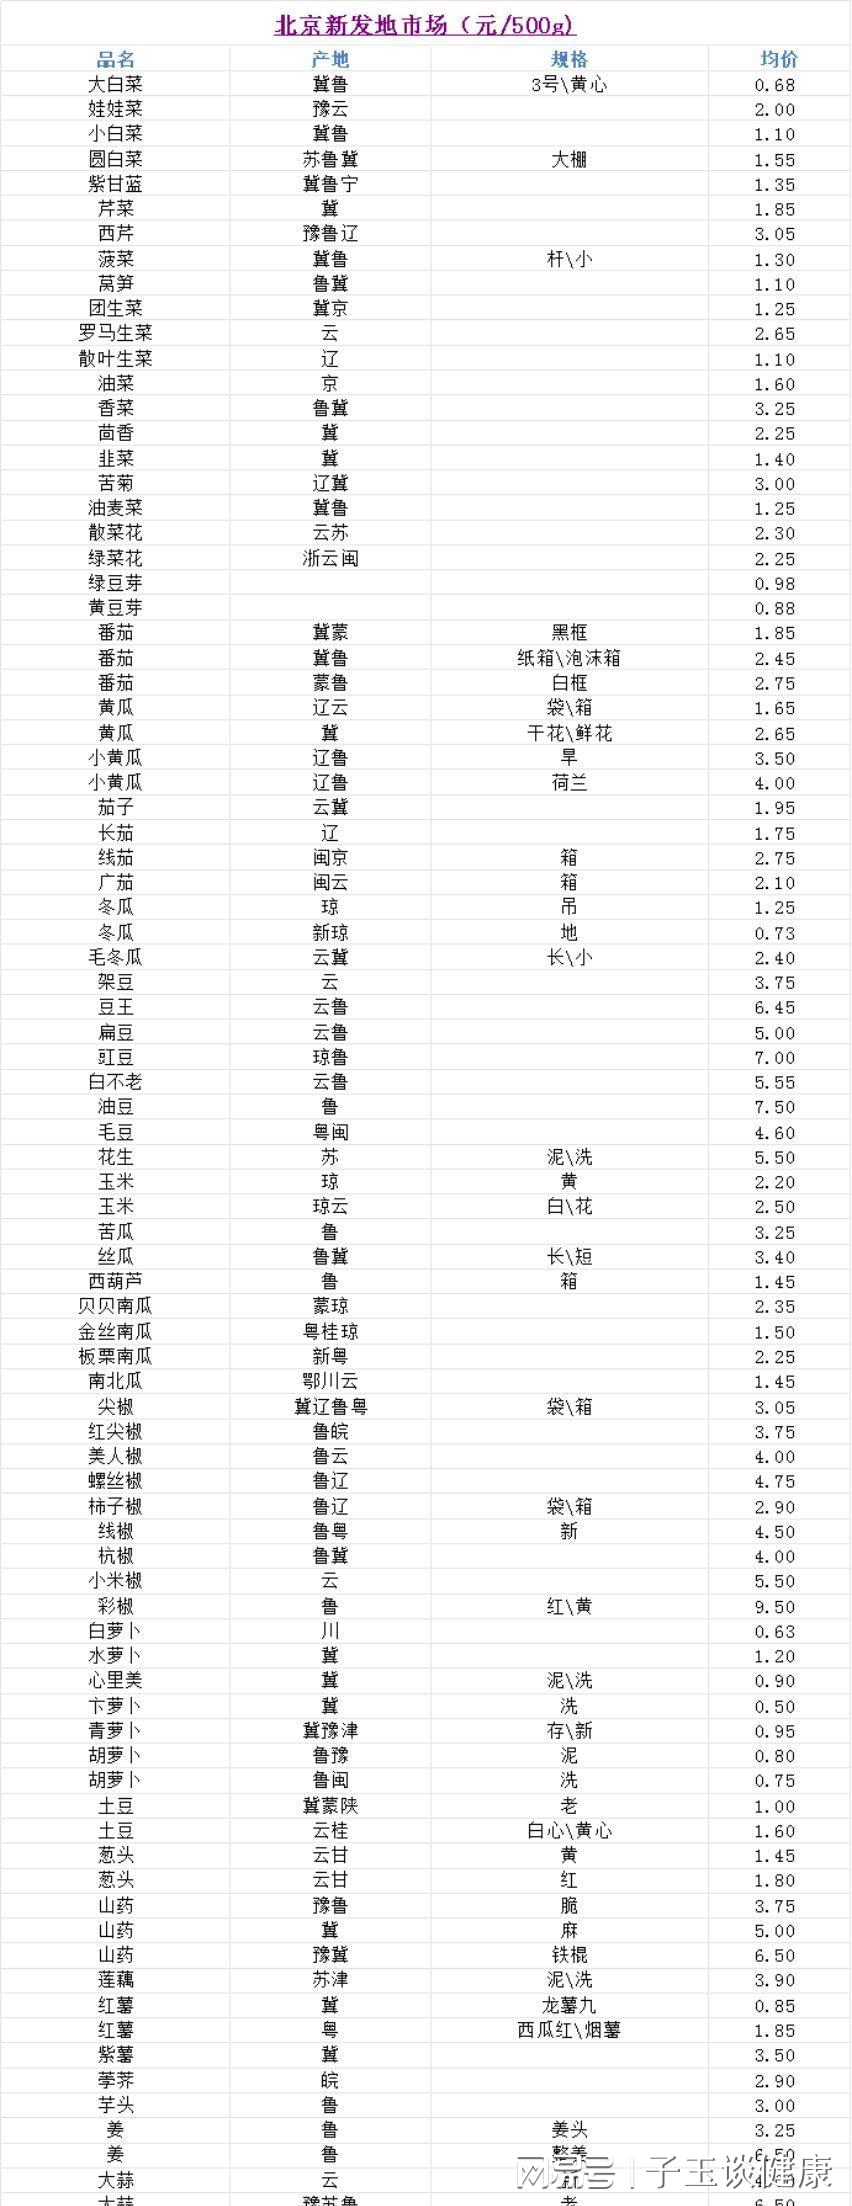 kg,价格:元)统计时间:2024年4月8日广州江南果菜批发市场(单位:kg